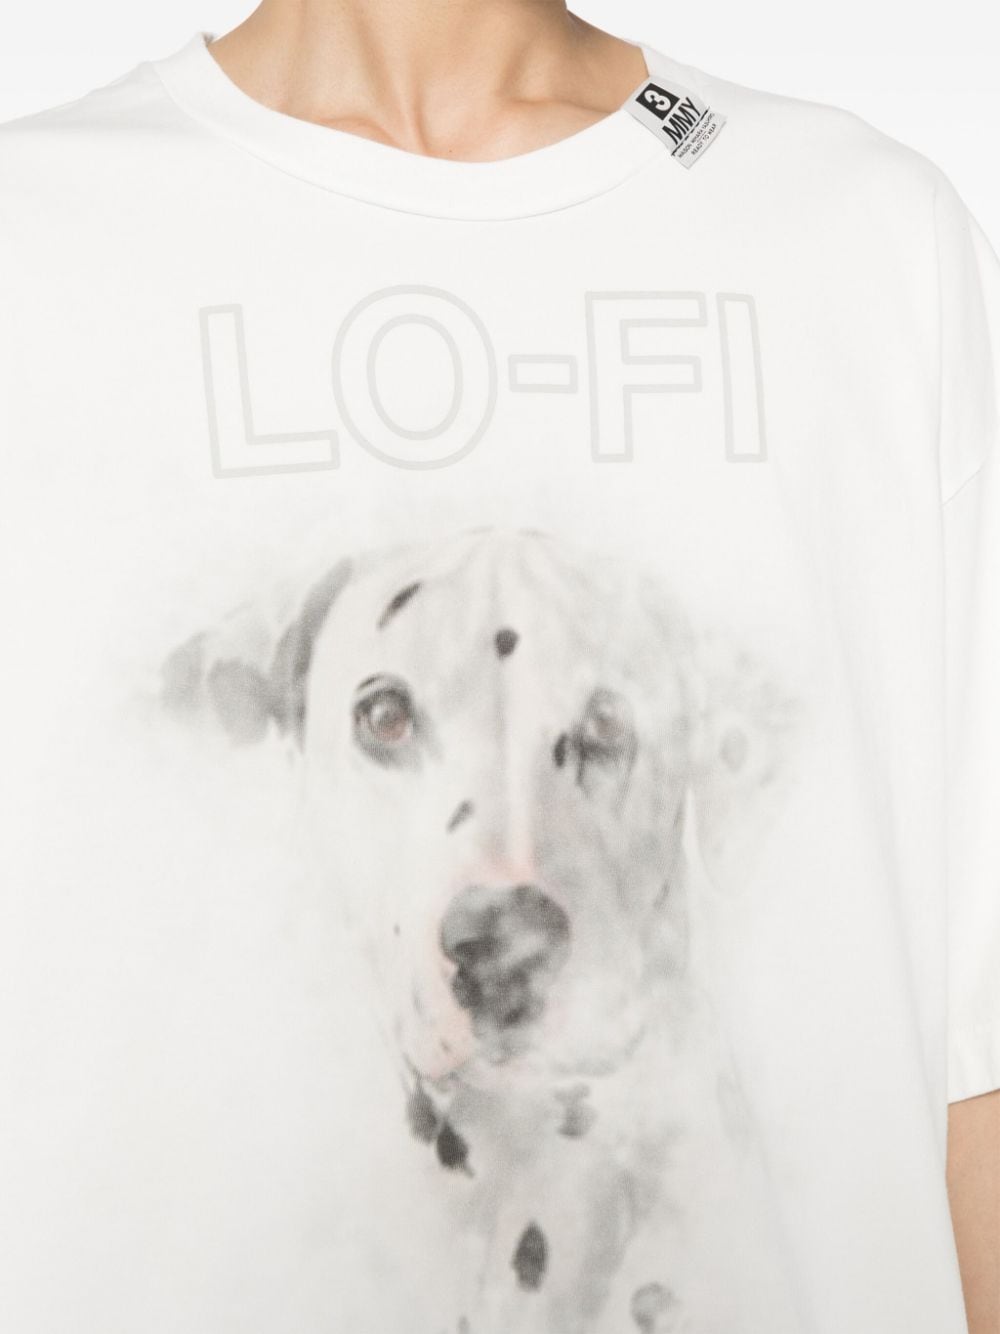 Maison Mihara - T-Shirt white imprimé dog - Lothaire